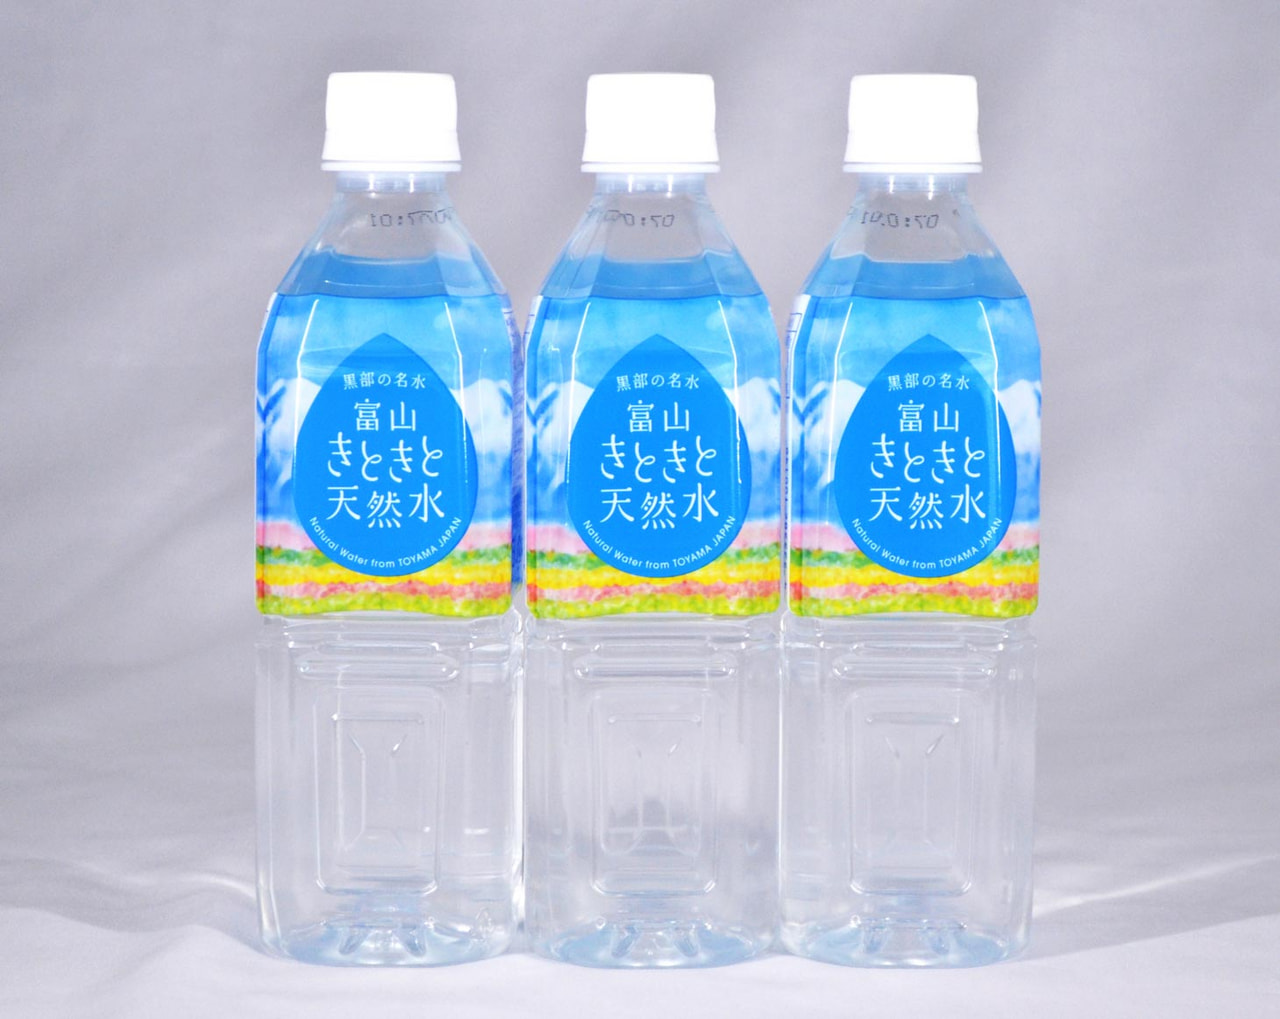 【新商品】富山きときと天然水を発売しました。